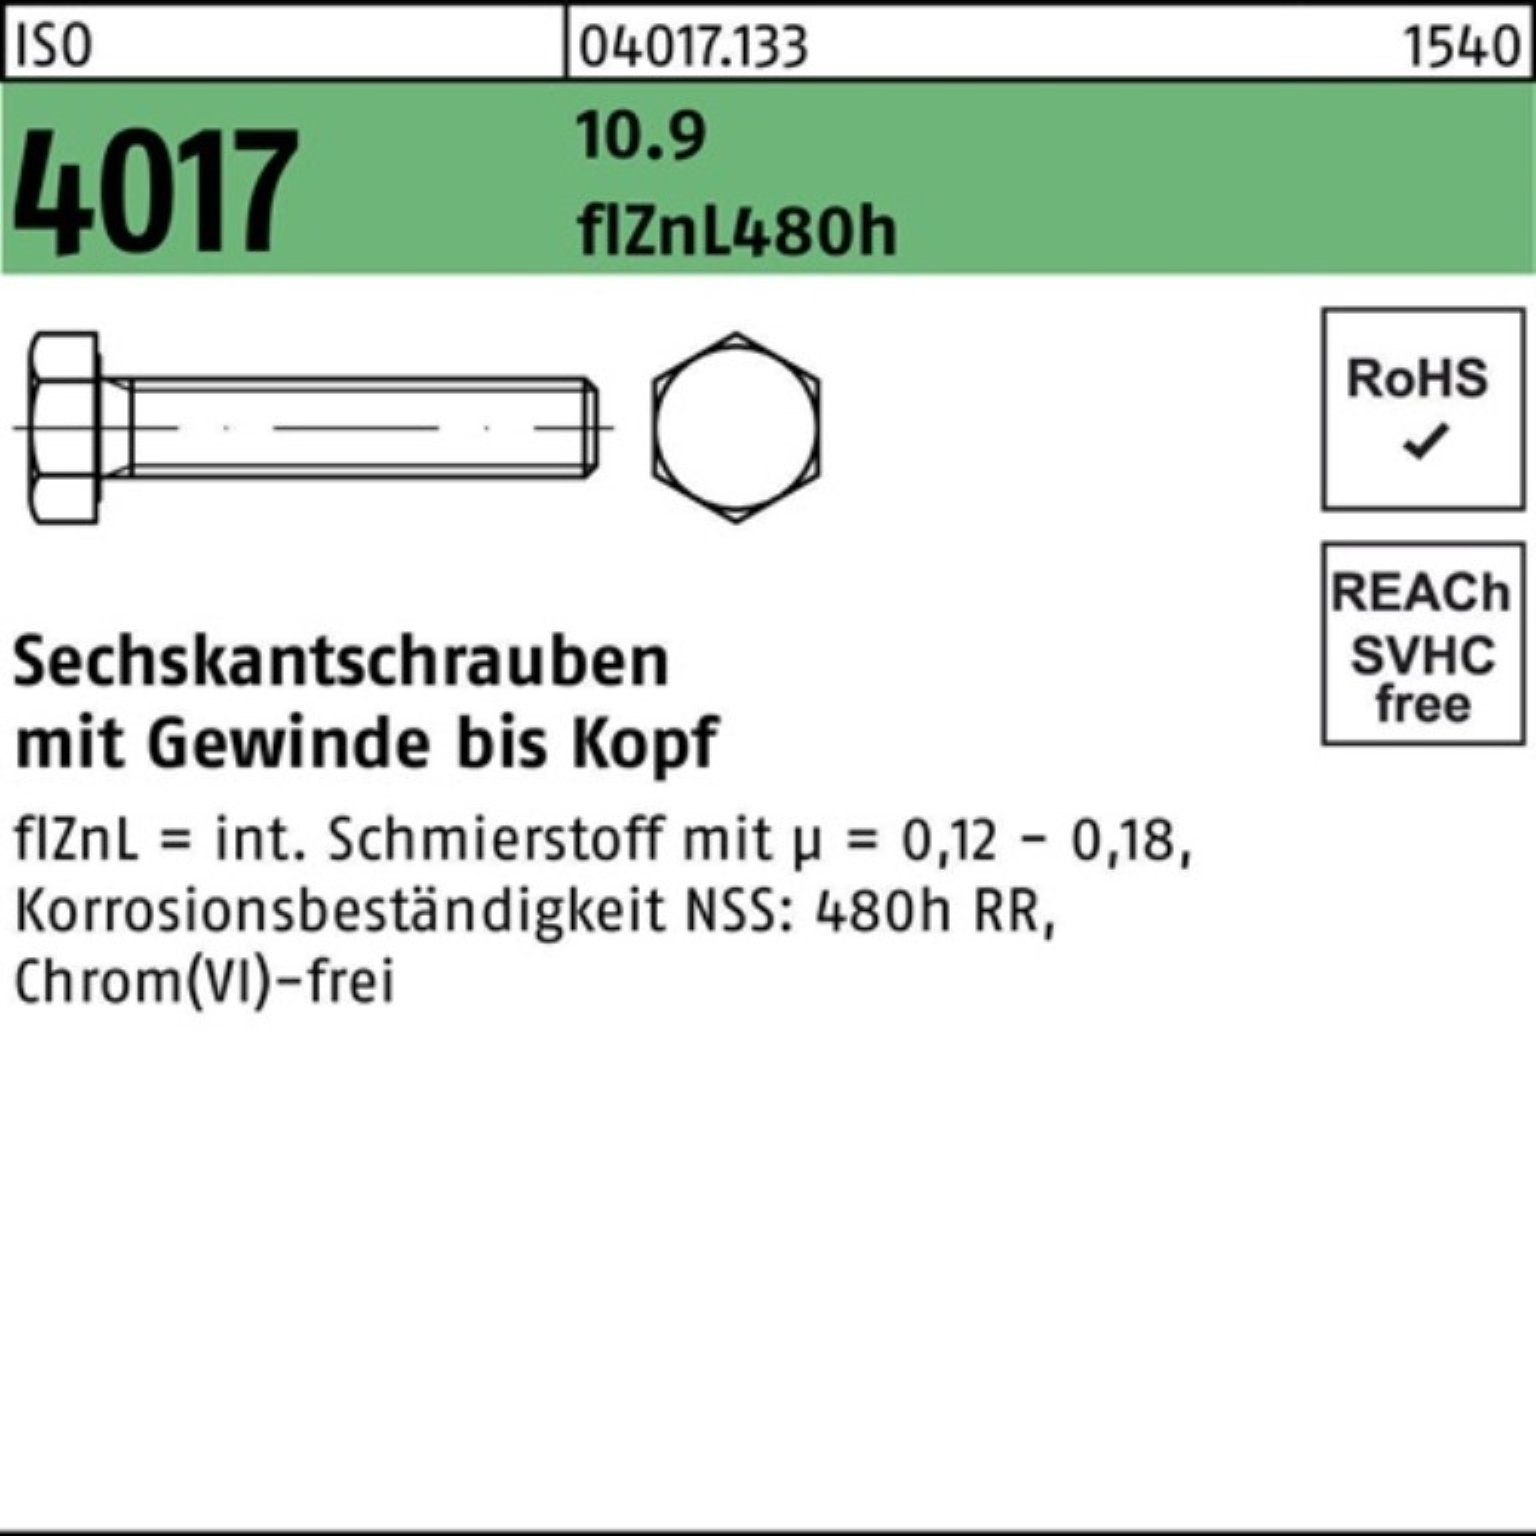 120 Sechskantschraube ISO Pack Sechskantschraube VG 100er 4017 zinklamellenb. Bufab M24x 10.9